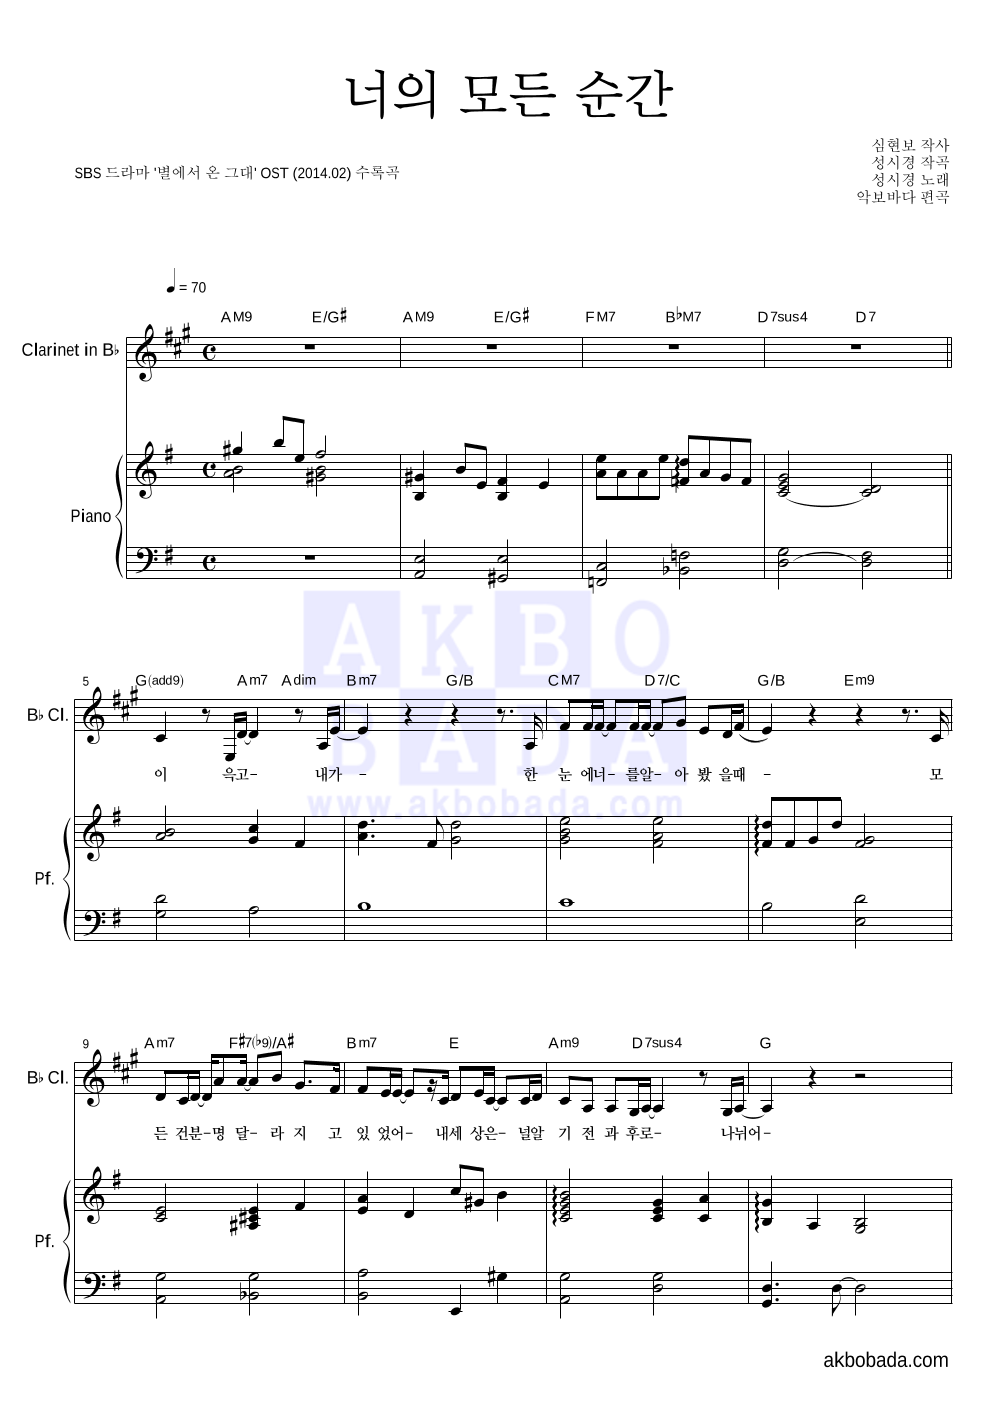 성시경 - 너의 모든 순간 (Piano Ver.) 클라리넷&피아노 악보 